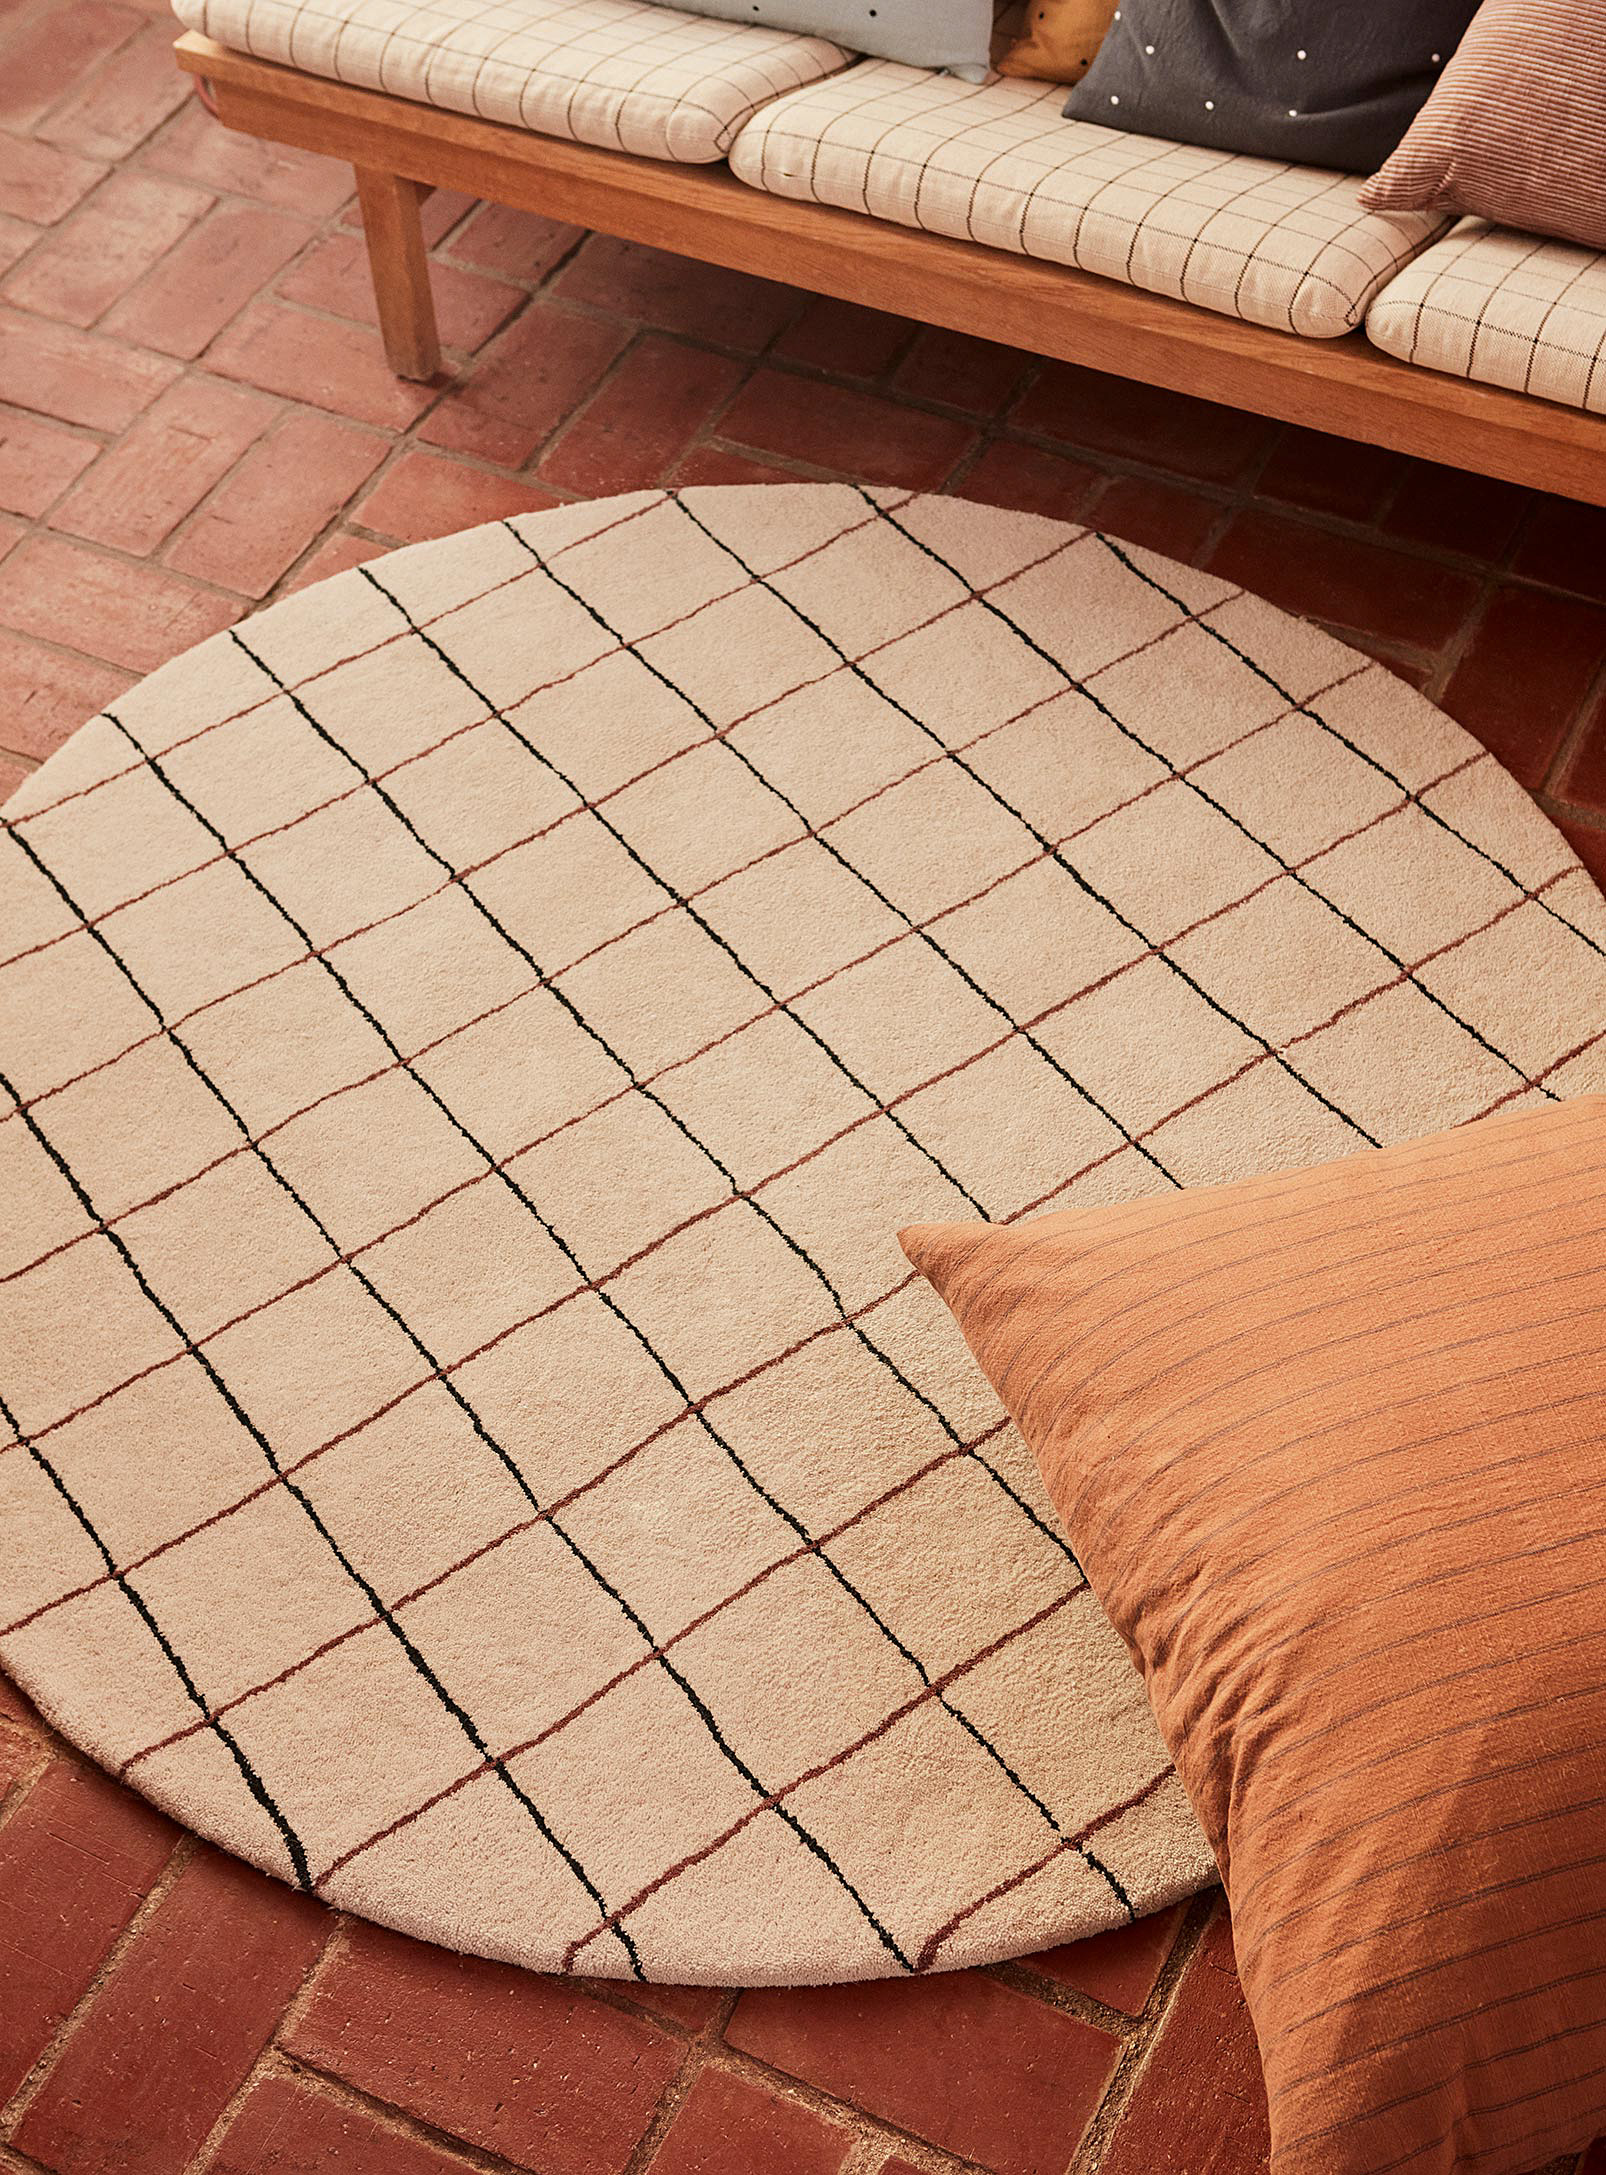 OYOY Living design - Le tapis circulaire quadrillé 140 cm de diamètre